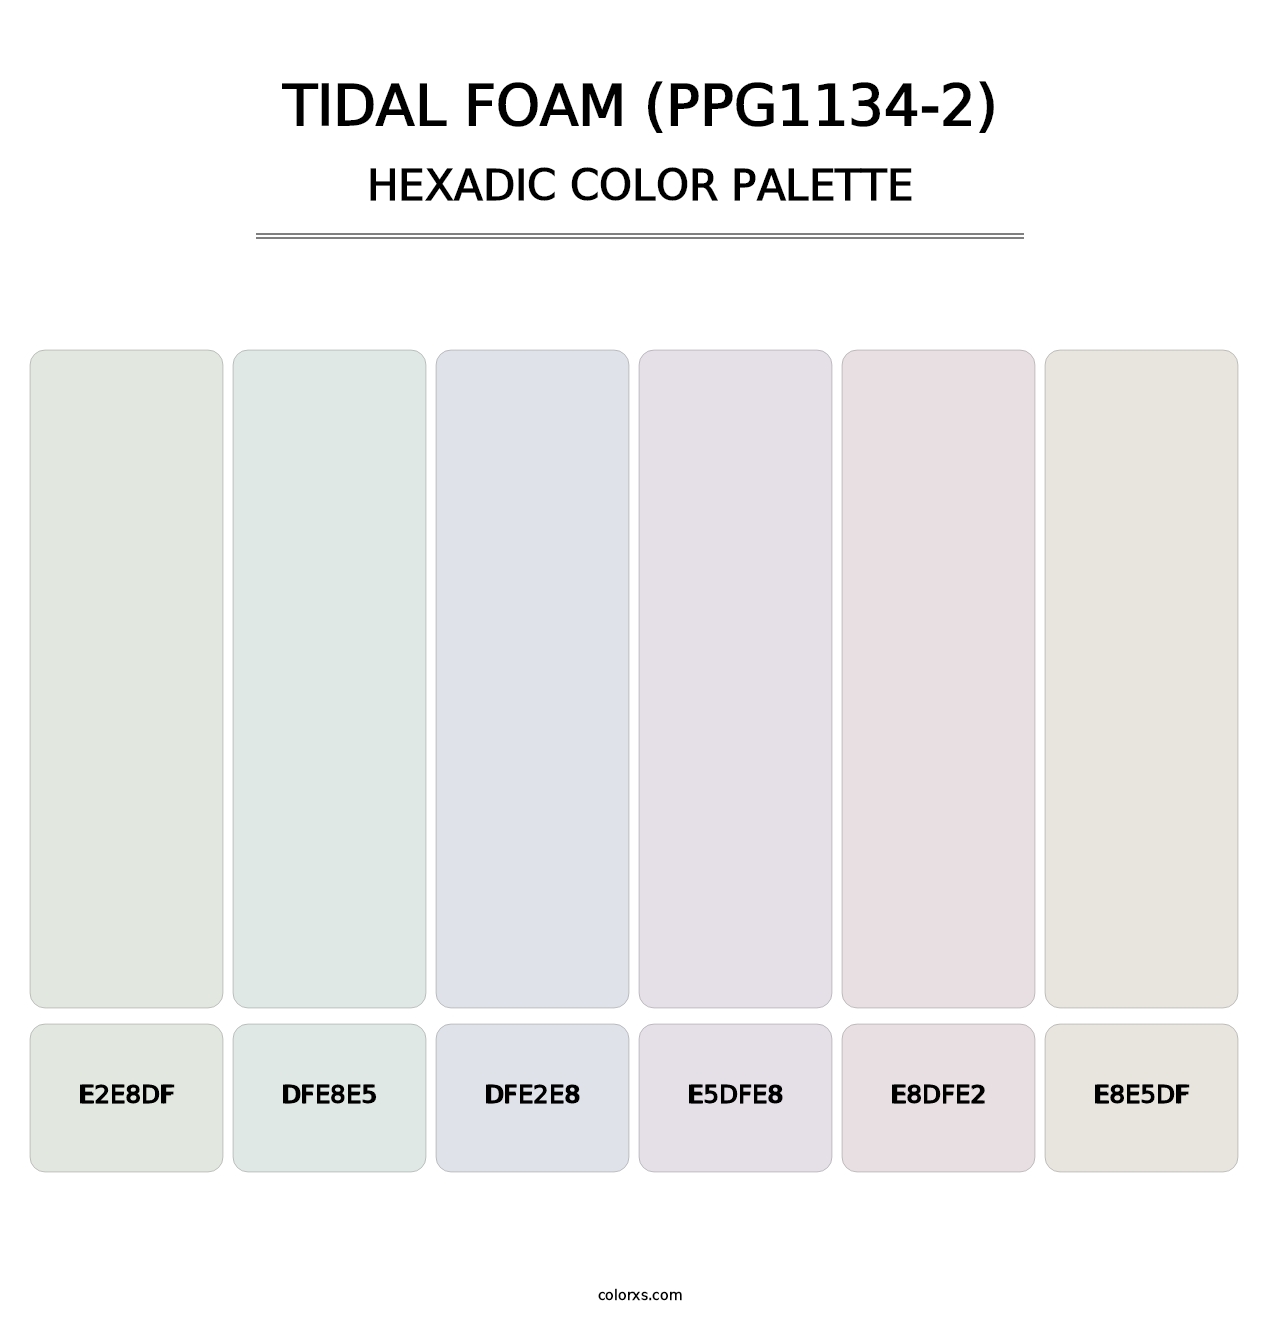 Tidal Foam (PPG1134-2) - Hexadic Color Palette